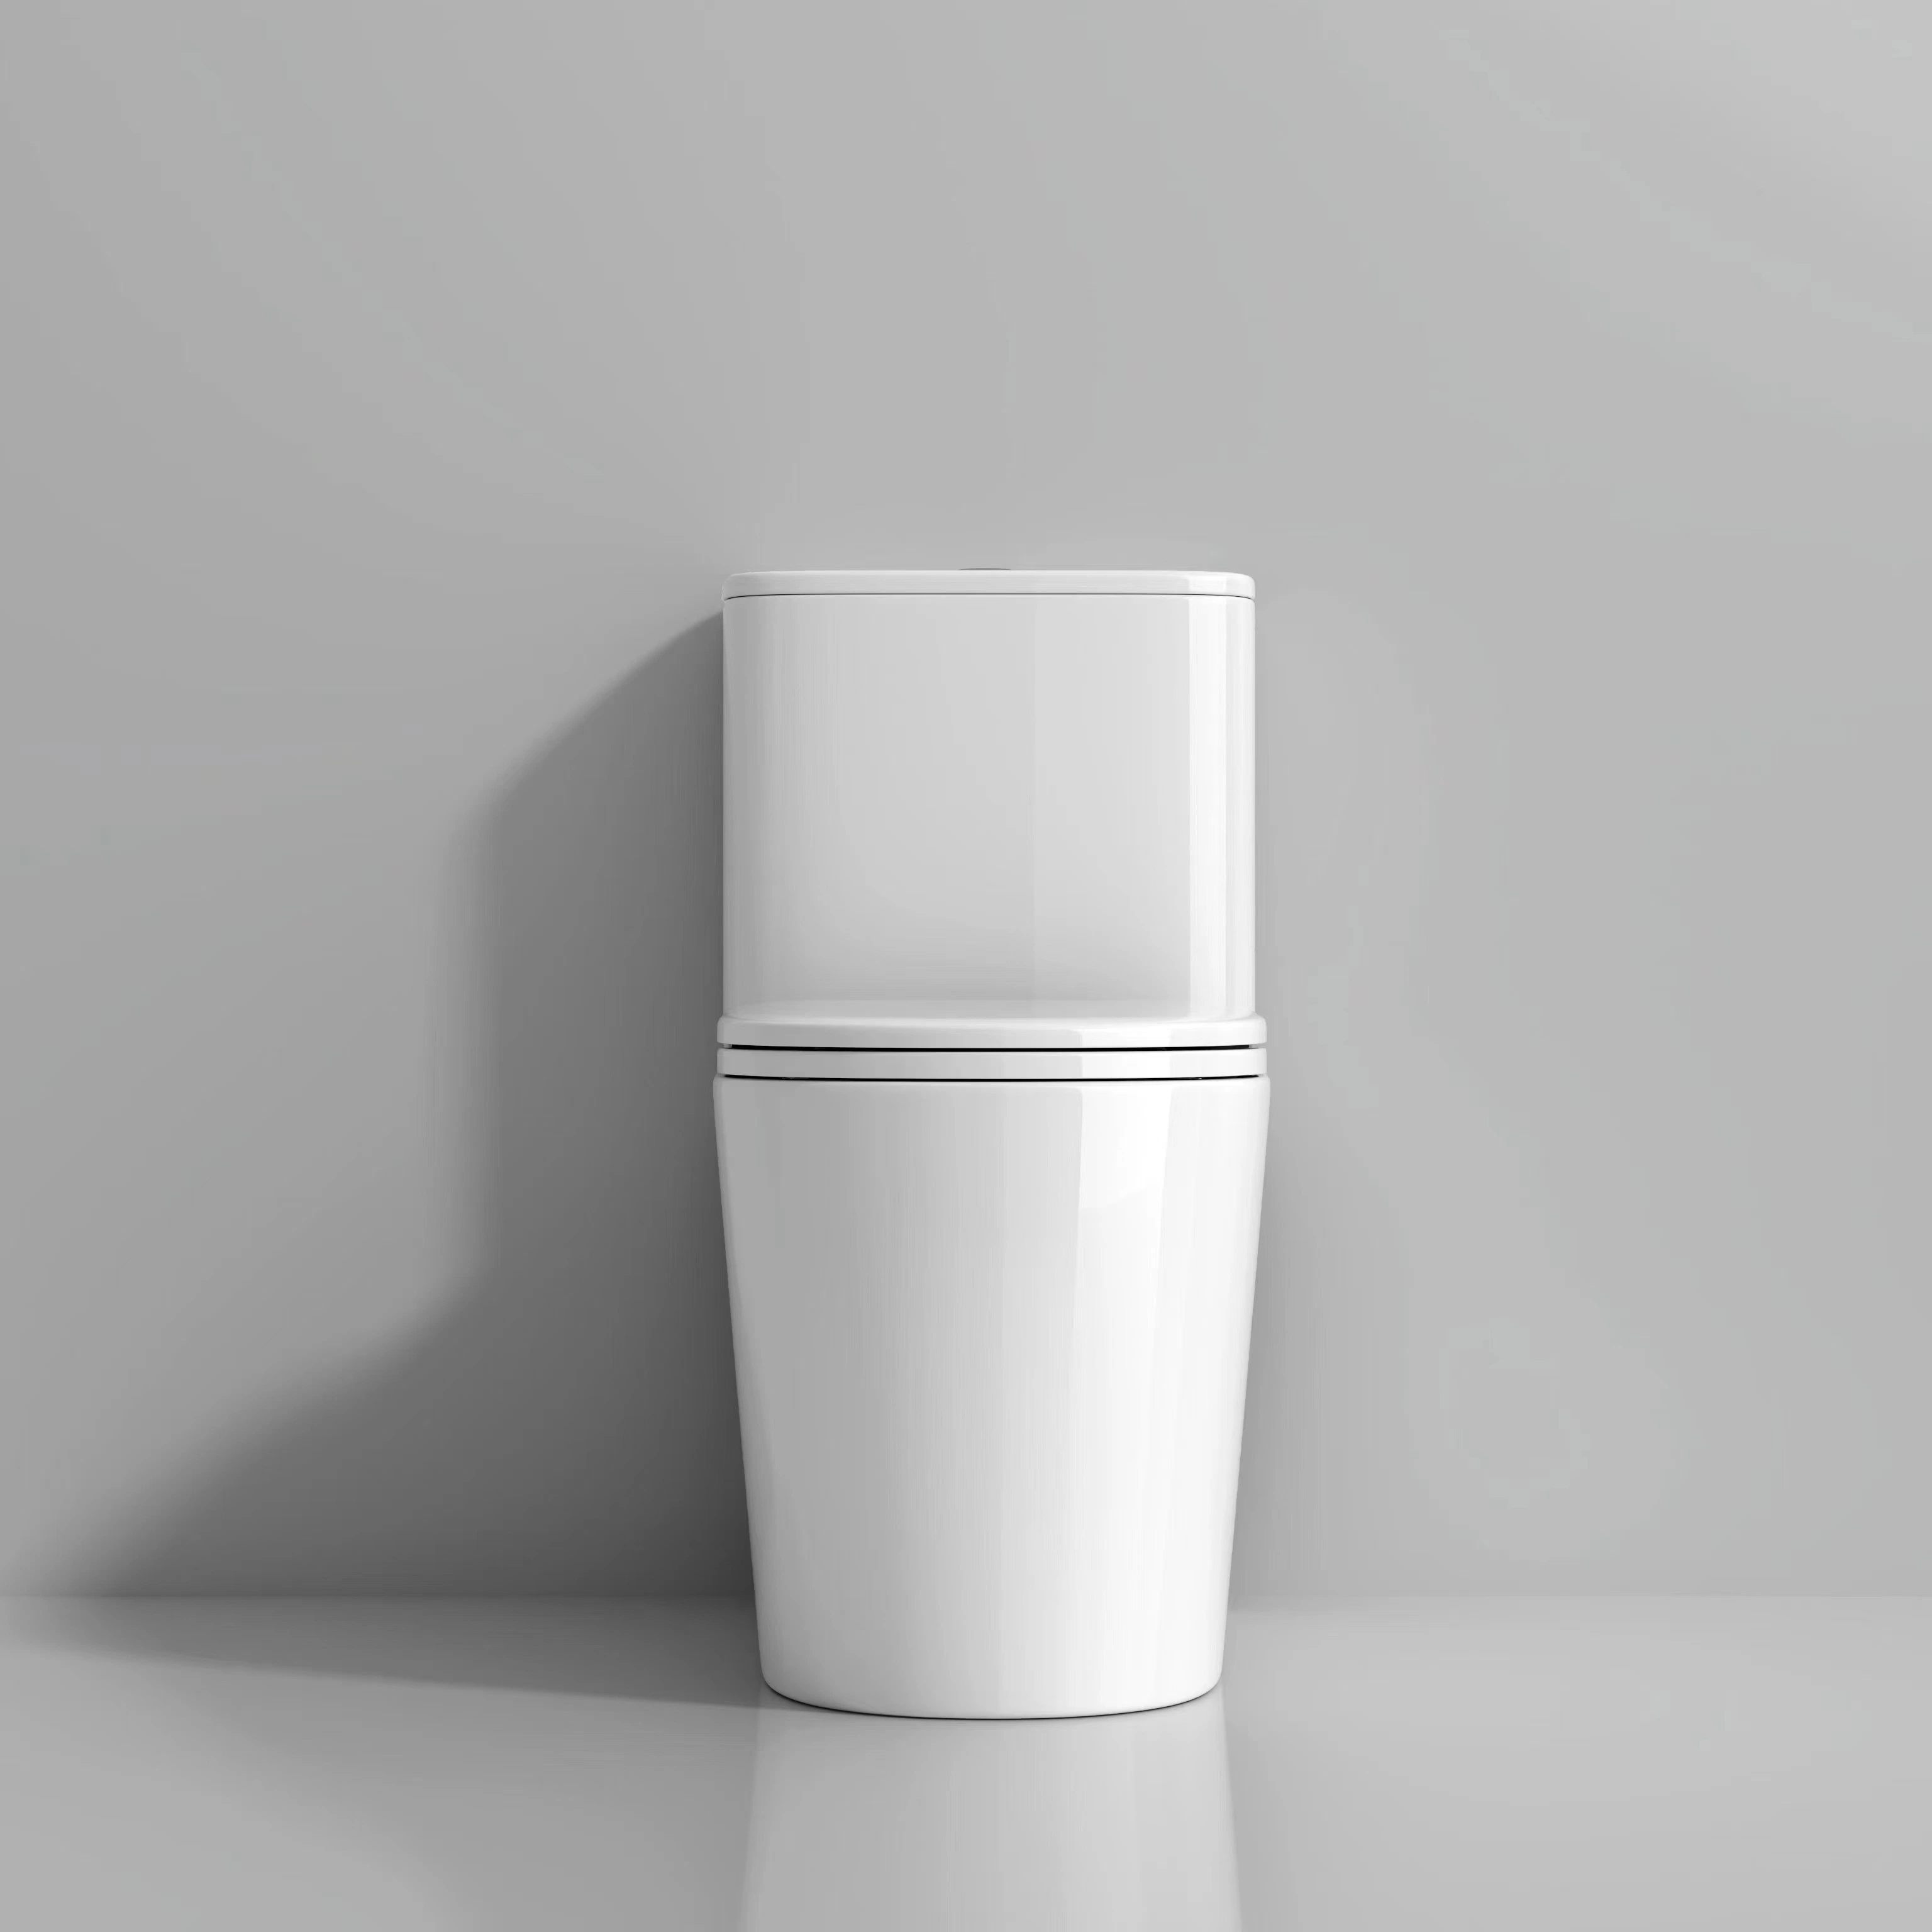 2023 Chaozhou Sanitary Ware S-Trap Водосберегающая одна часть сифоническая Туалет с крышкой сиденья с низкой скорости Белая цветная бытовая вода Шкаф